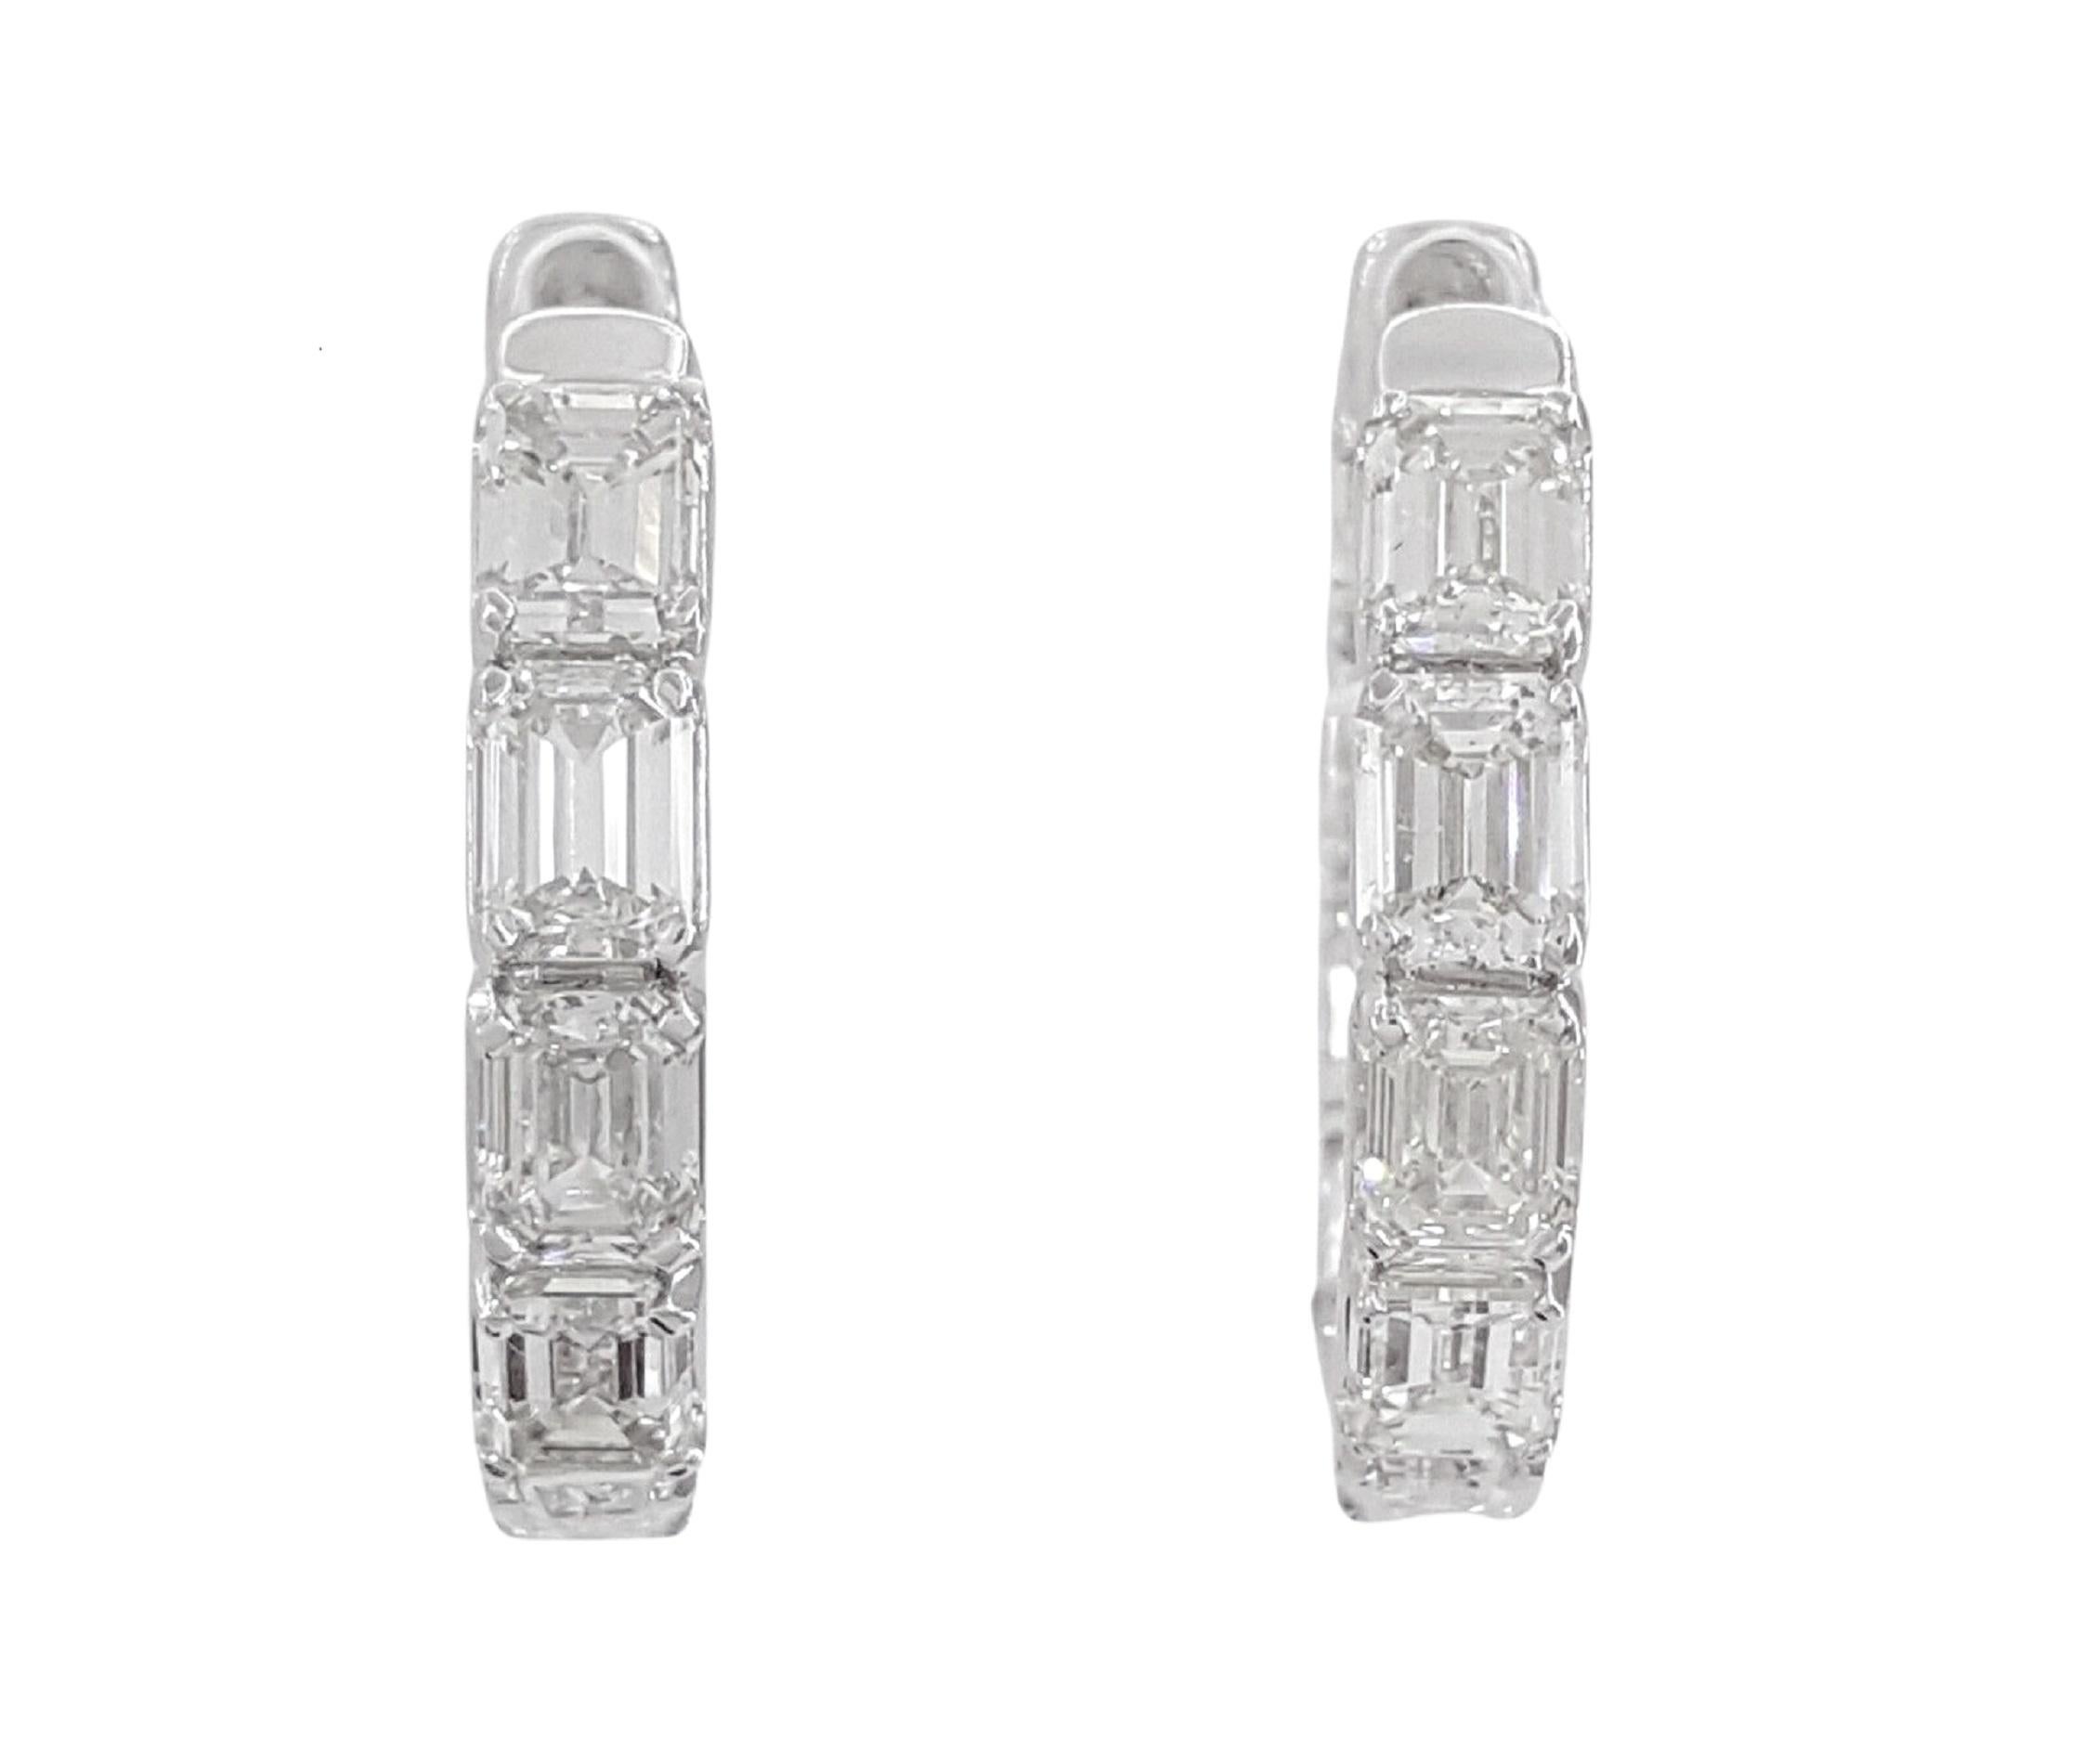 Ein exquisites Paar von ca. 5 Karat Diamantohrringen im Smaragdschliff.

Es gibt 36 (beide Ohrringe insgesamt) natürliche Diamanten im Smaragdschliff mit einem Gesamtgewicht von ca. 5 Karat. Die Diamanten sind von der Farbe her G-I und von der